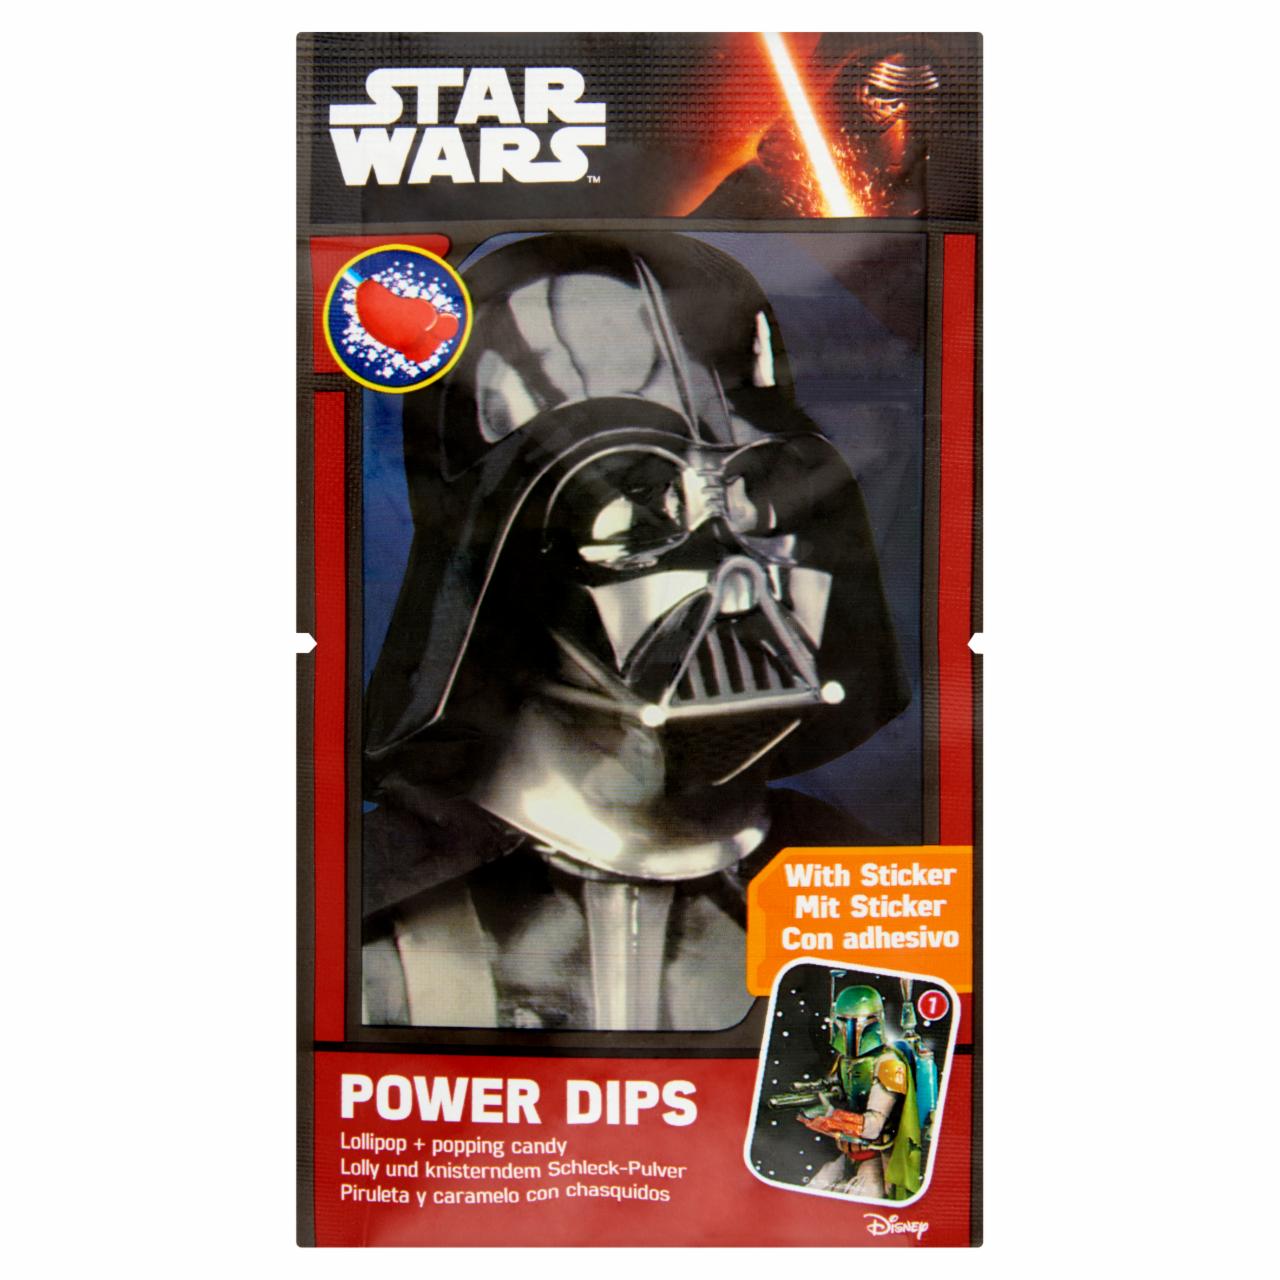 Képek - Star Wars Power Dips nyalóka eper ízű aromával és pukkanó porral 12 g